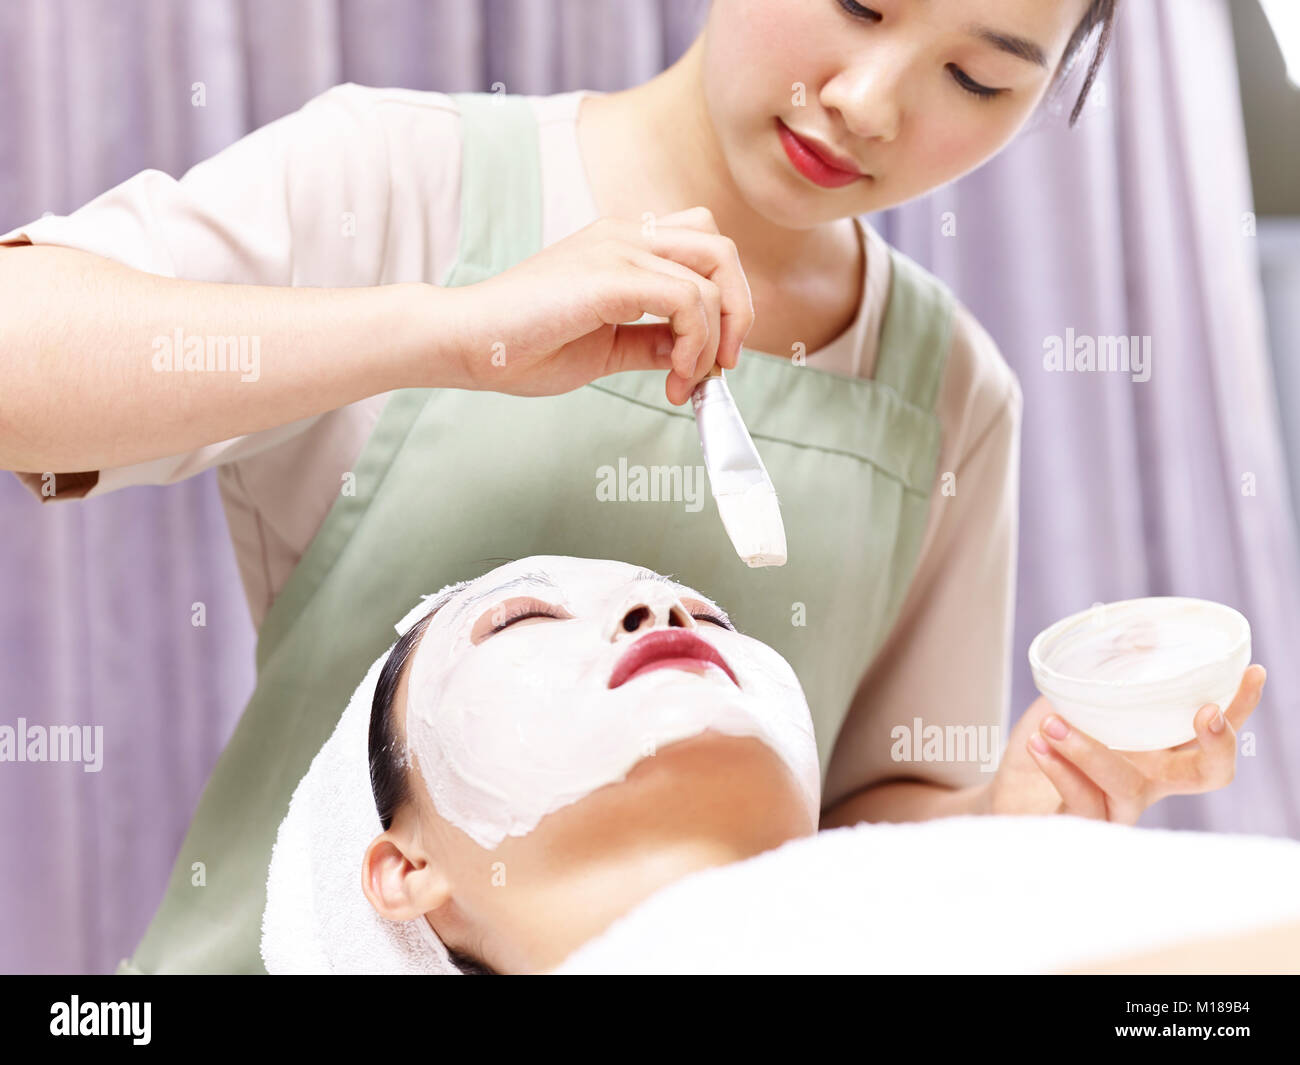 L'application de la beauté asiatique masque blanc avec un pinceau sur le visage d'une jeune femme. Banque D'Images